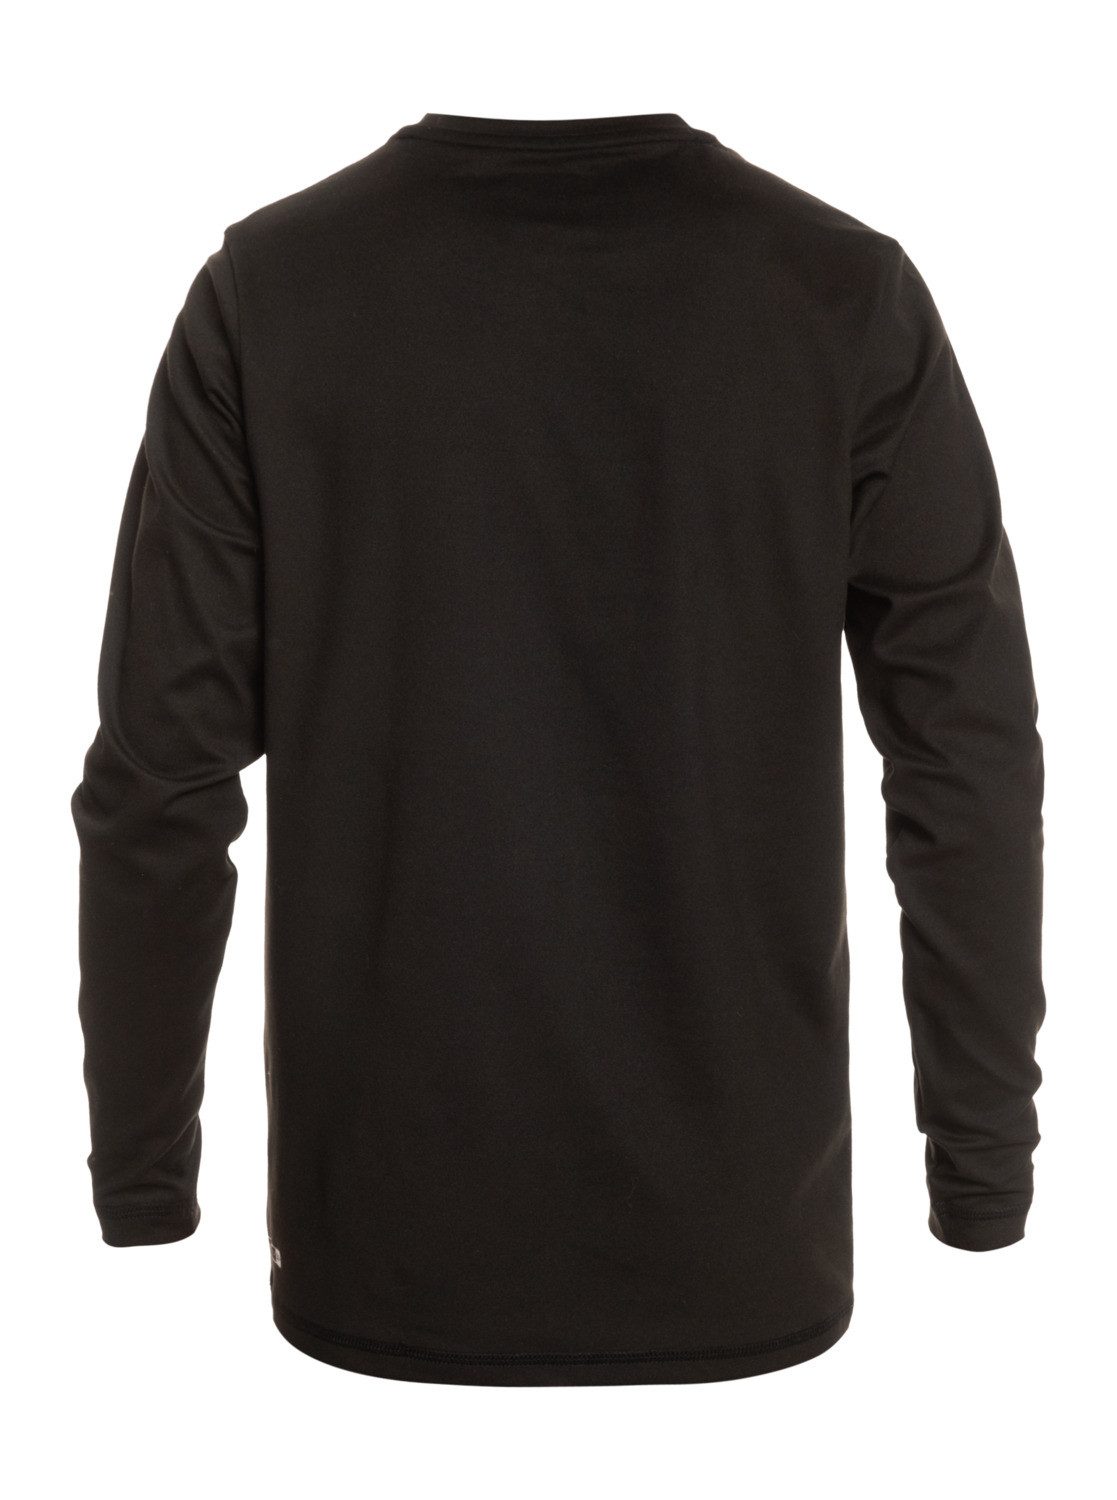 Streak Neopren Quiksilver Shirt Solid Black